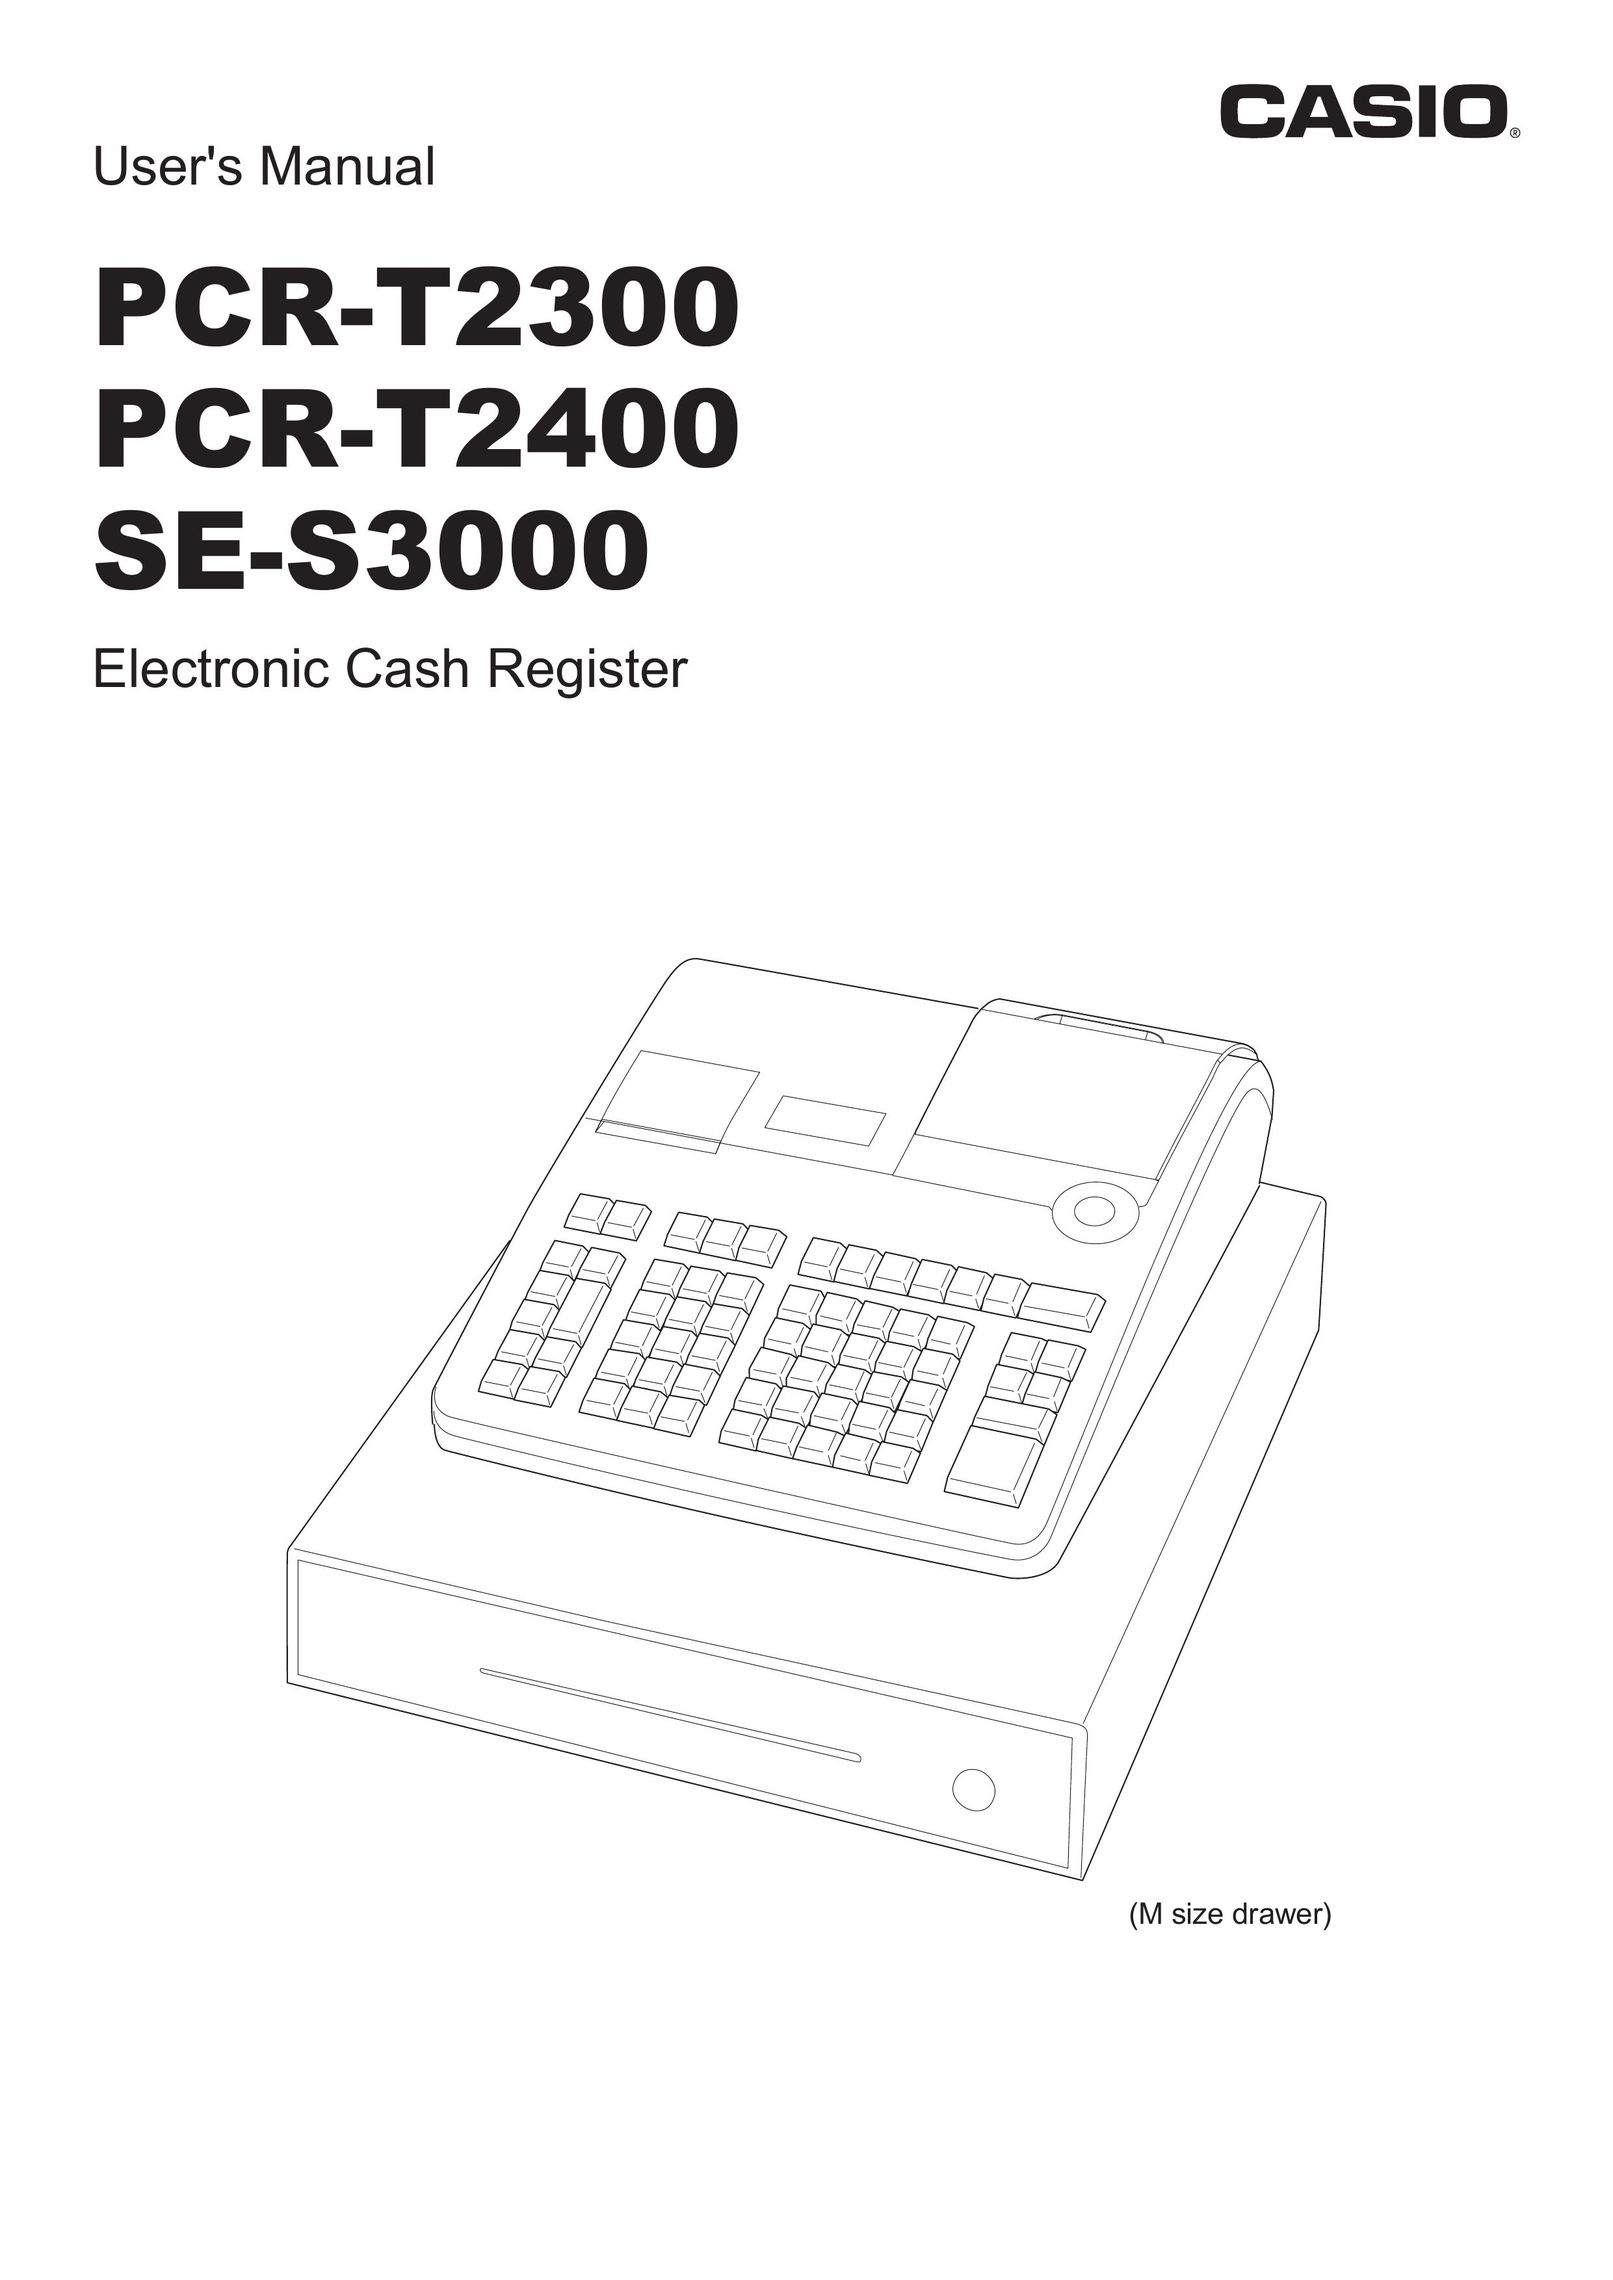 Casio SE-S3000 Cash Register User Manual